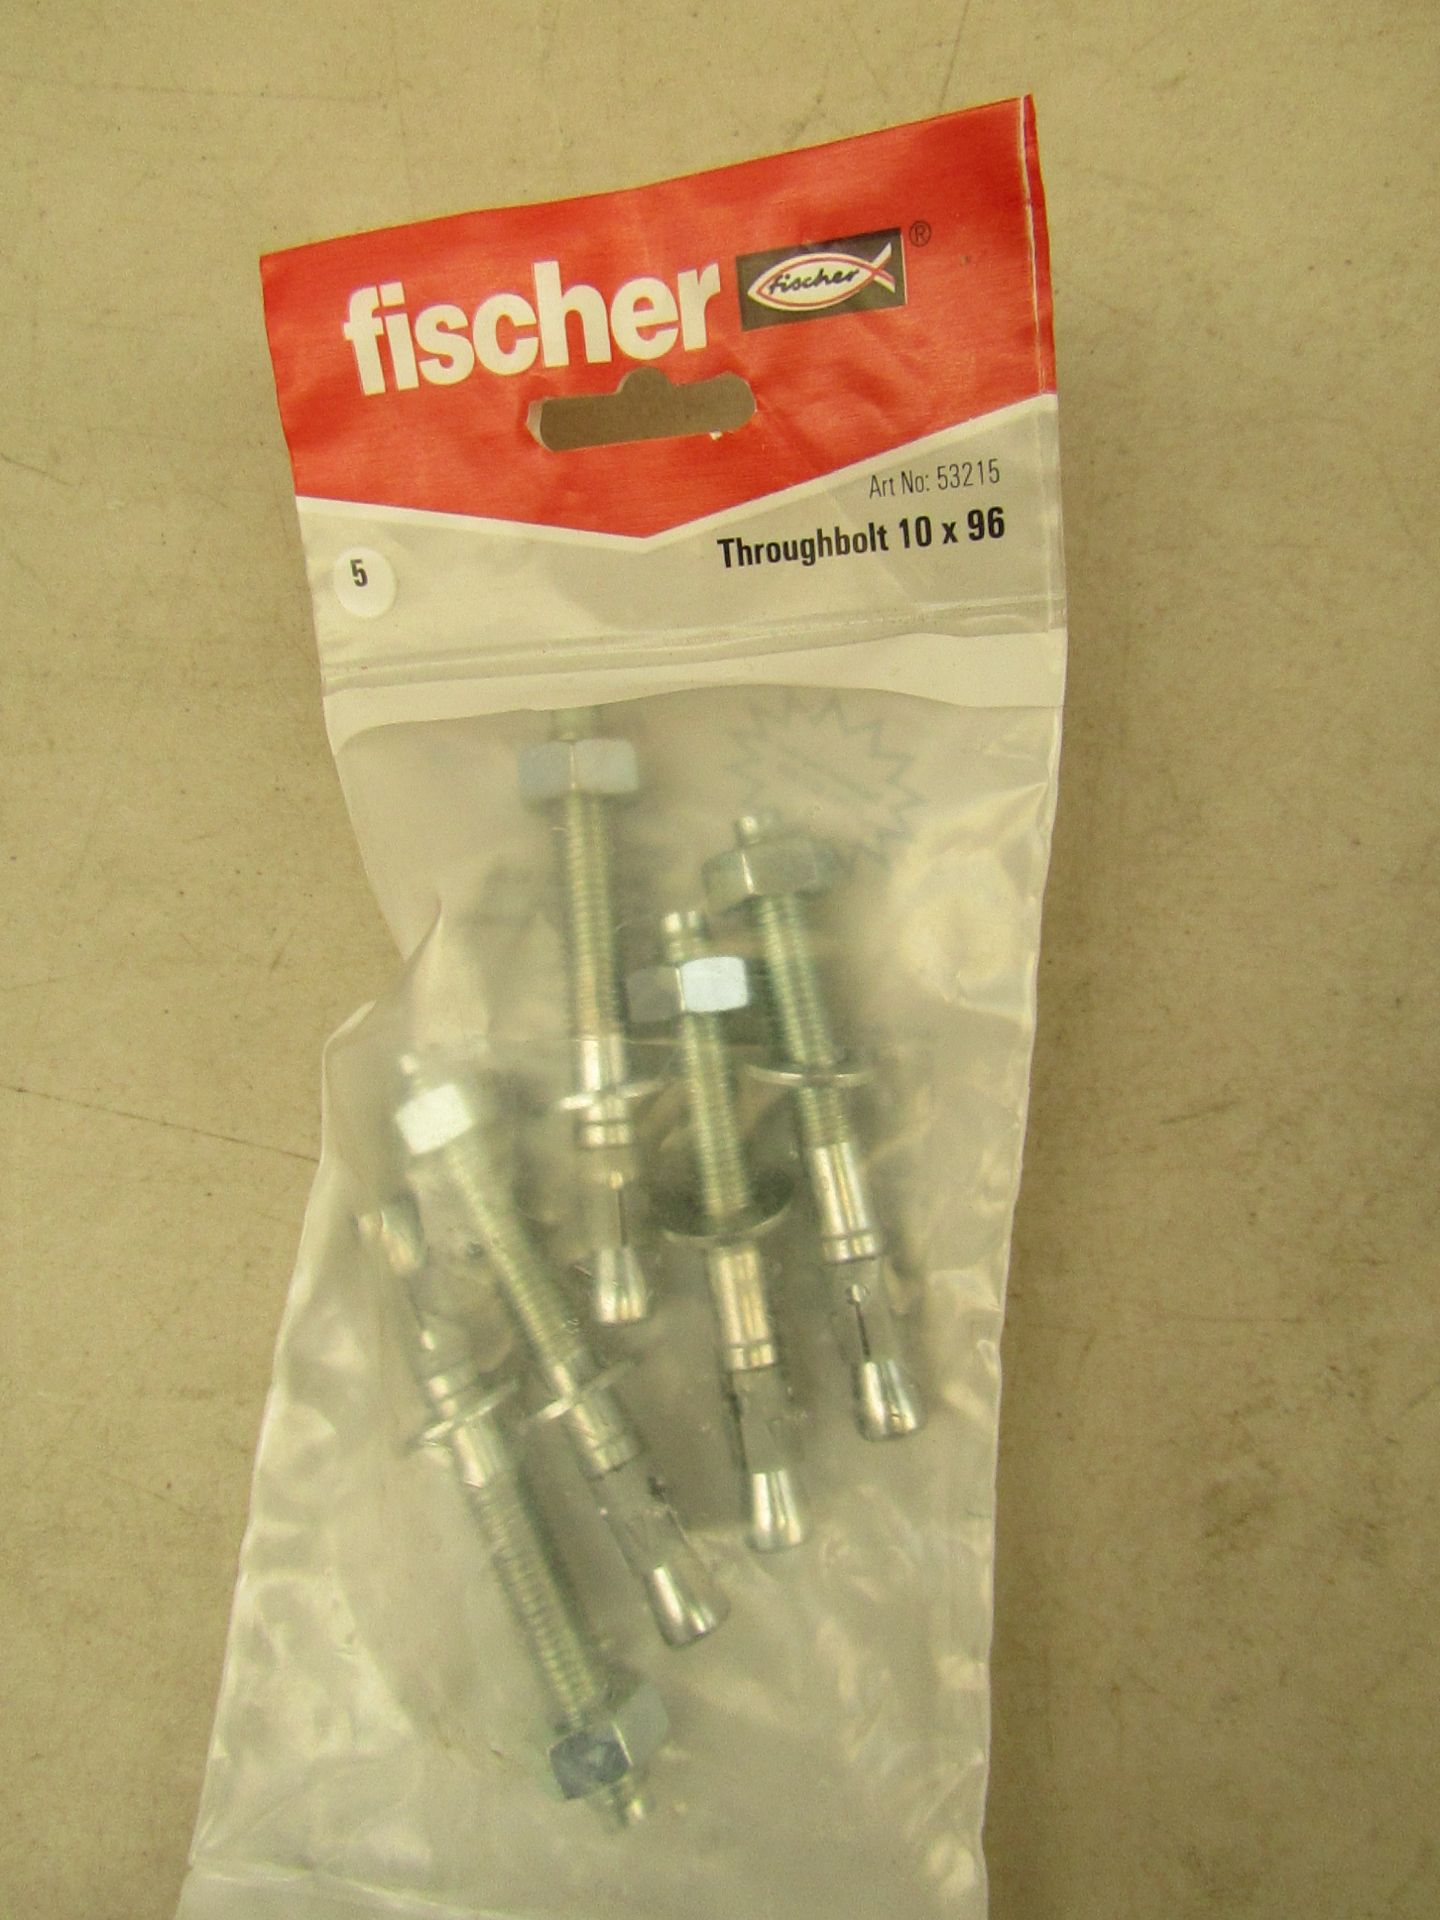 10x Fischer bags of 5 throughbolt, all in packaging.